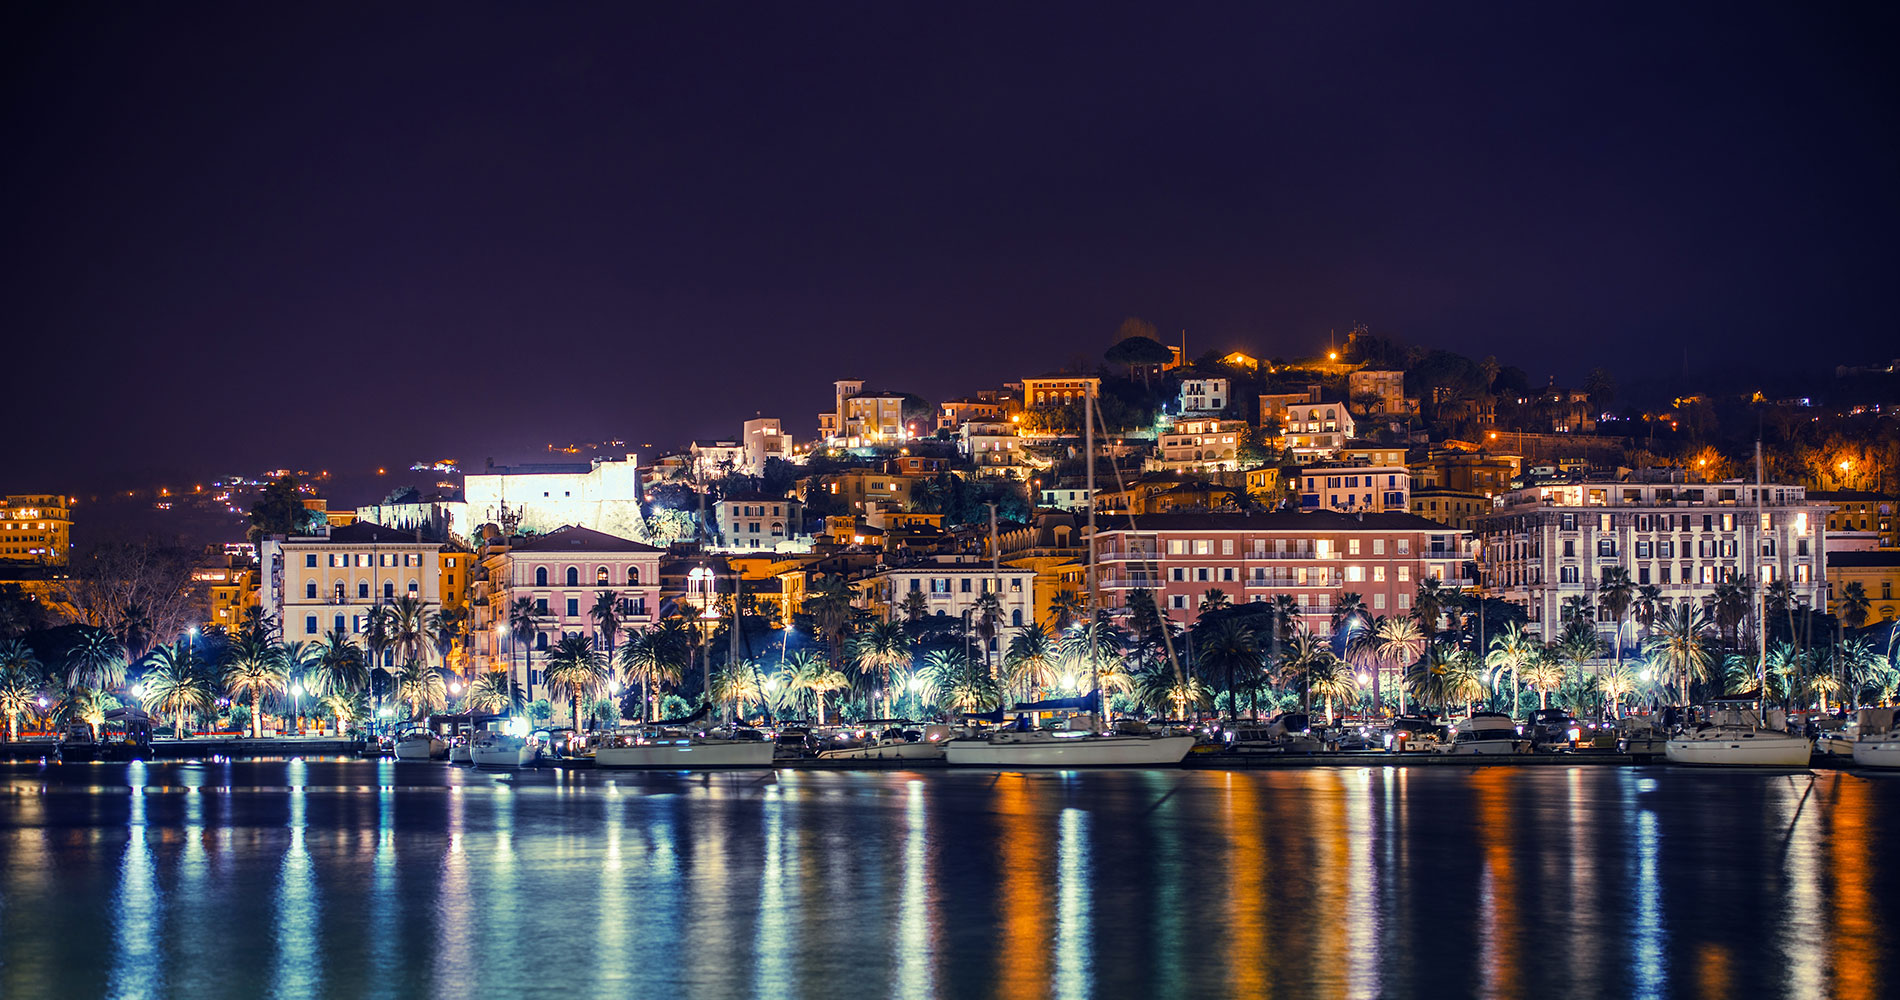 Foto notturna della città di La Spezia